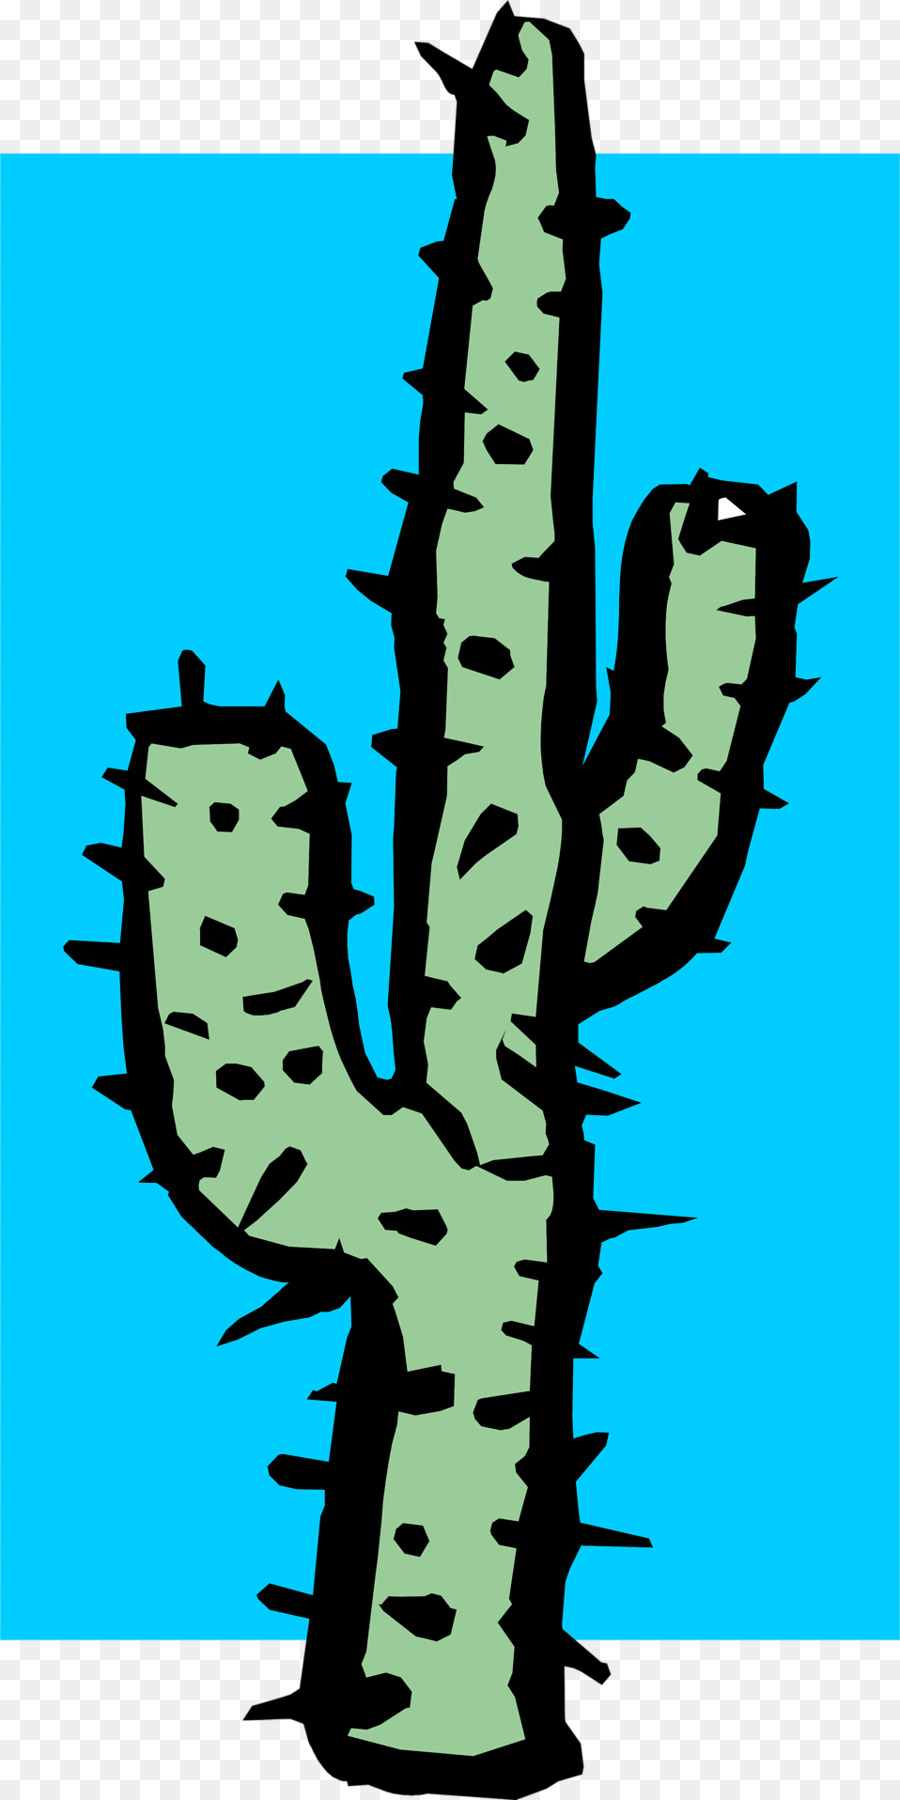 Cactaceae Clip art - Kaktus im hintergrund